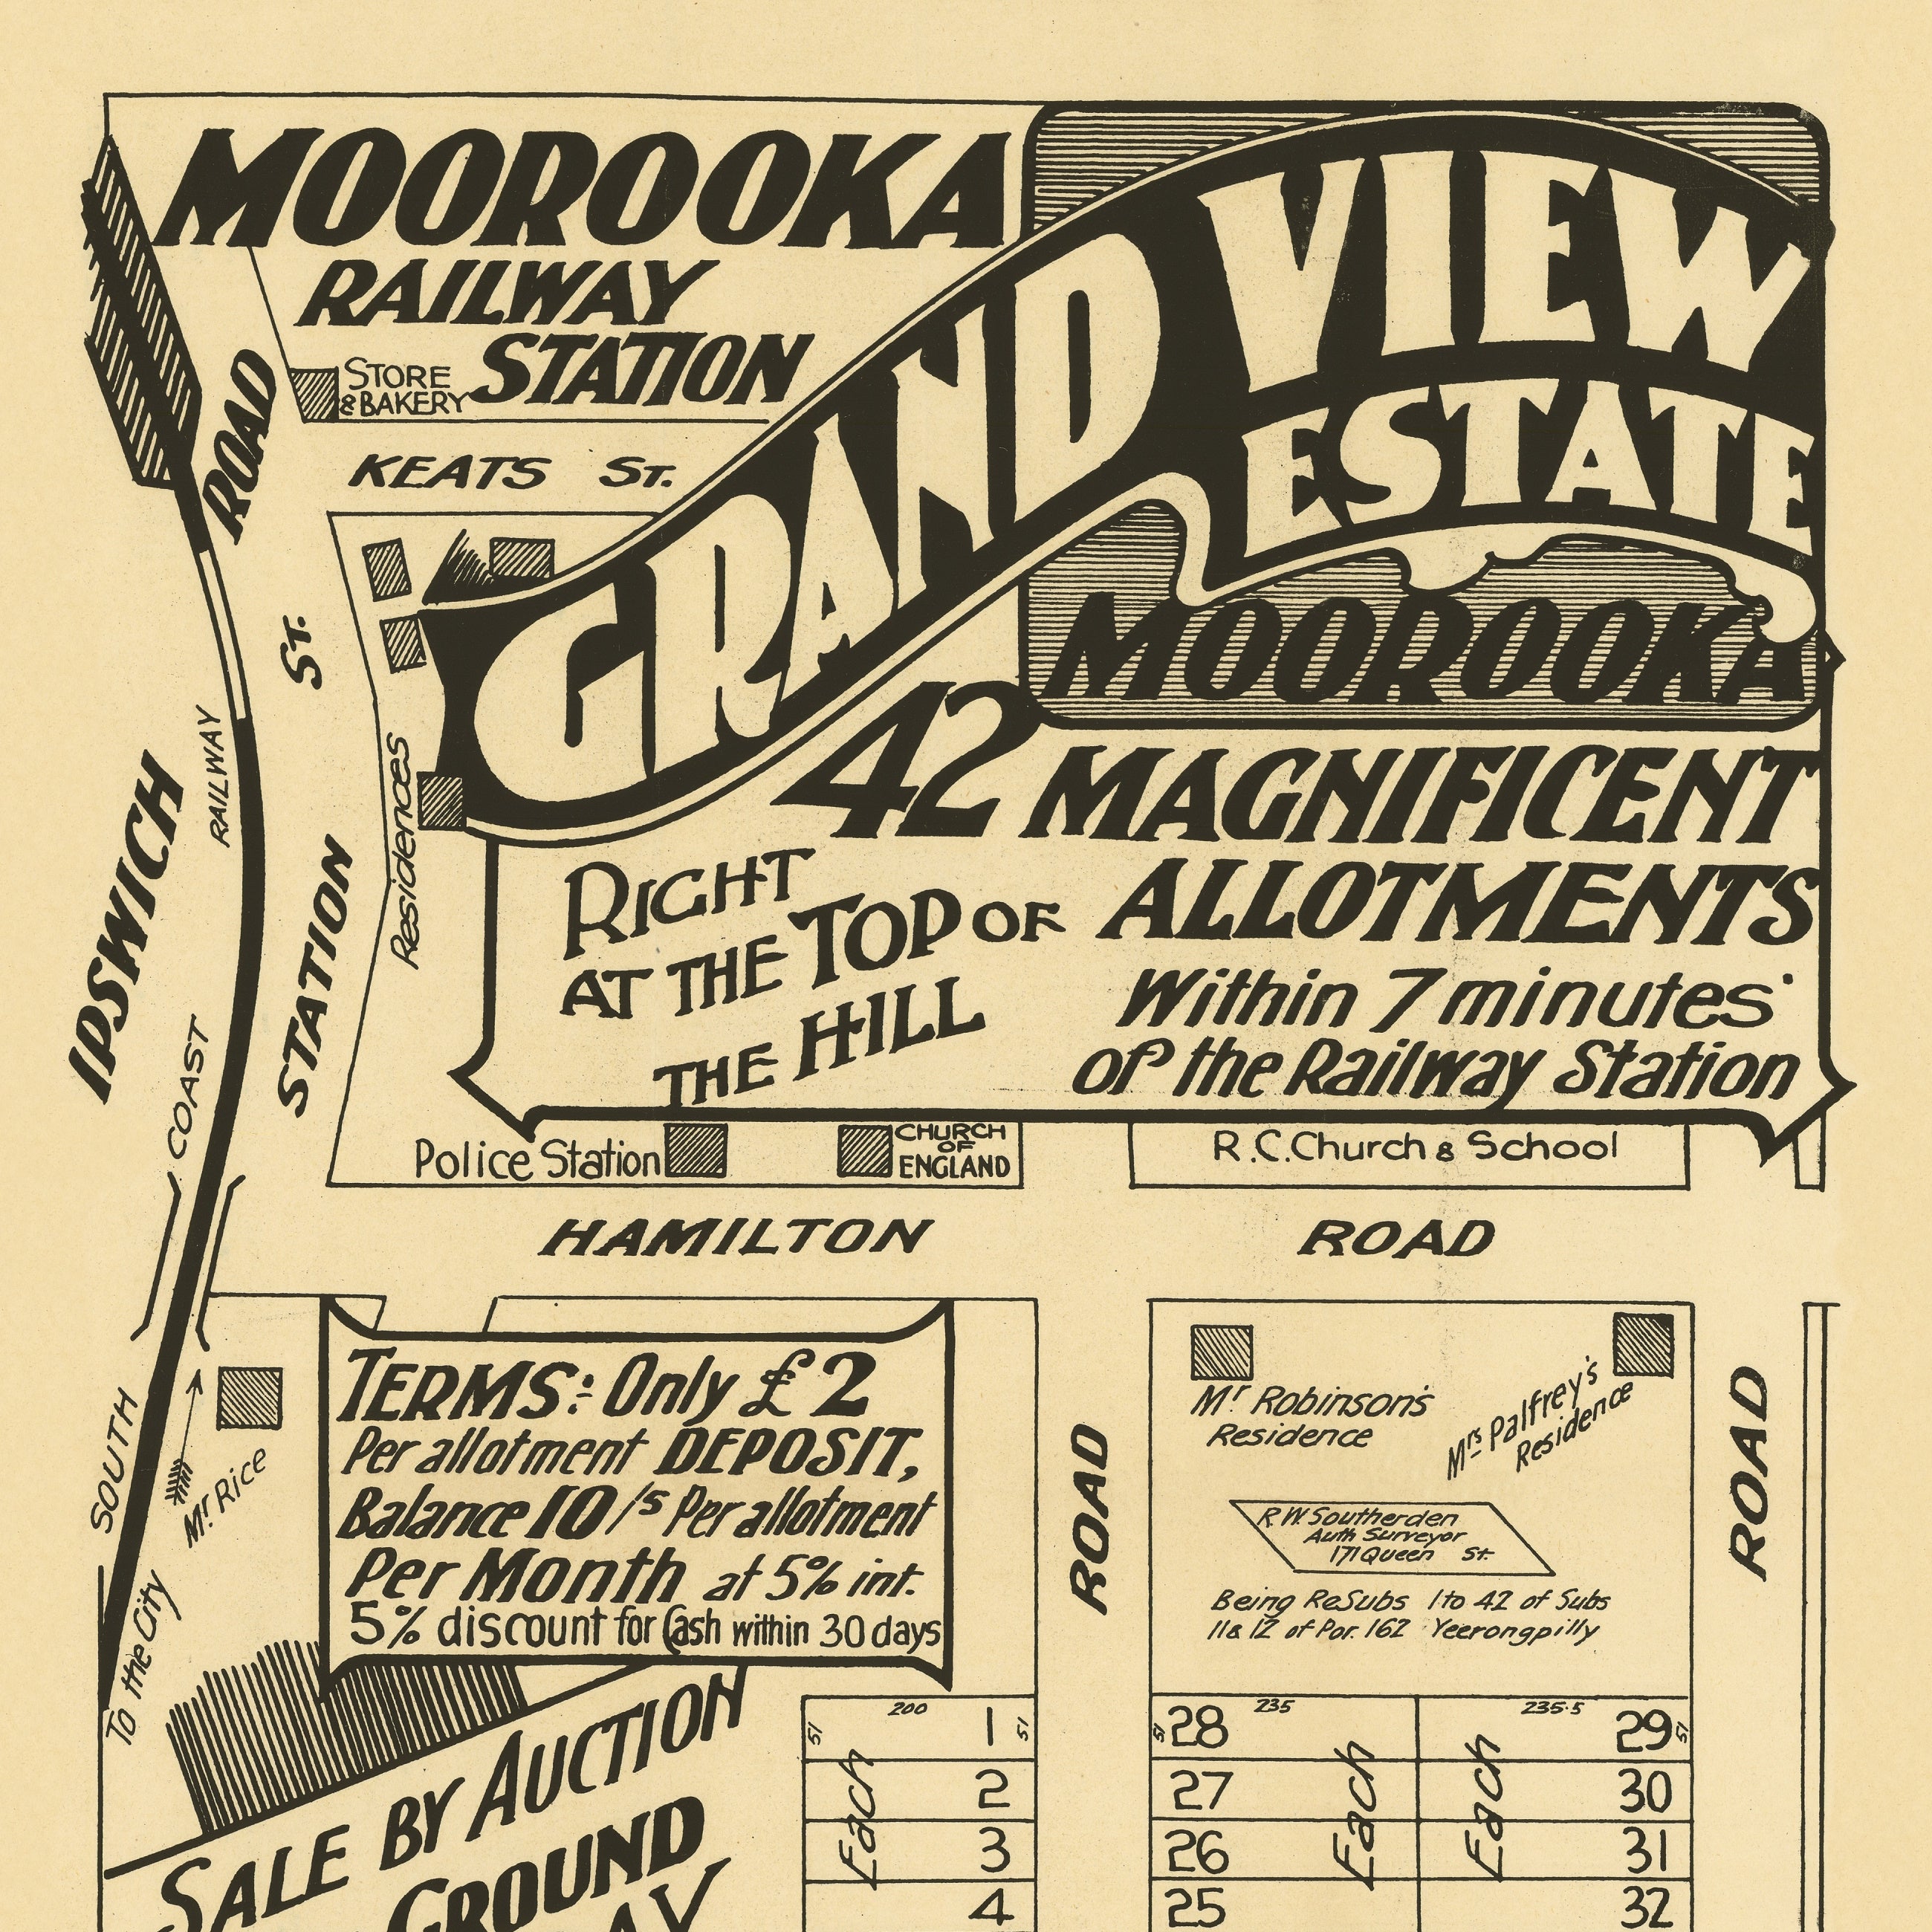 1920 Moorooka - Grand View